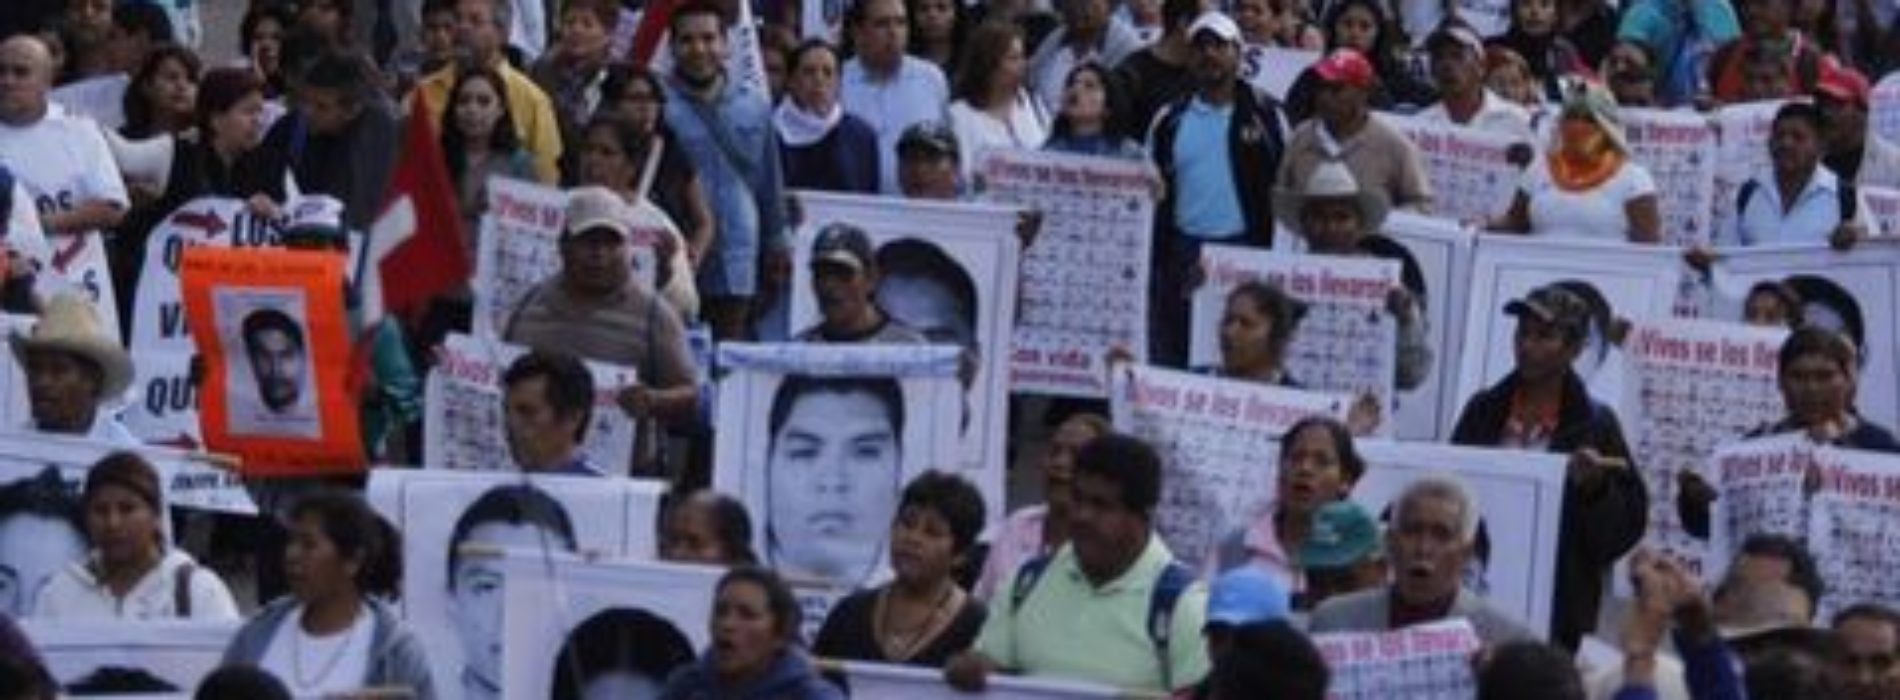 Con Peña no ha bajado violencia: CIDH; informe es infundado: gobierno federal